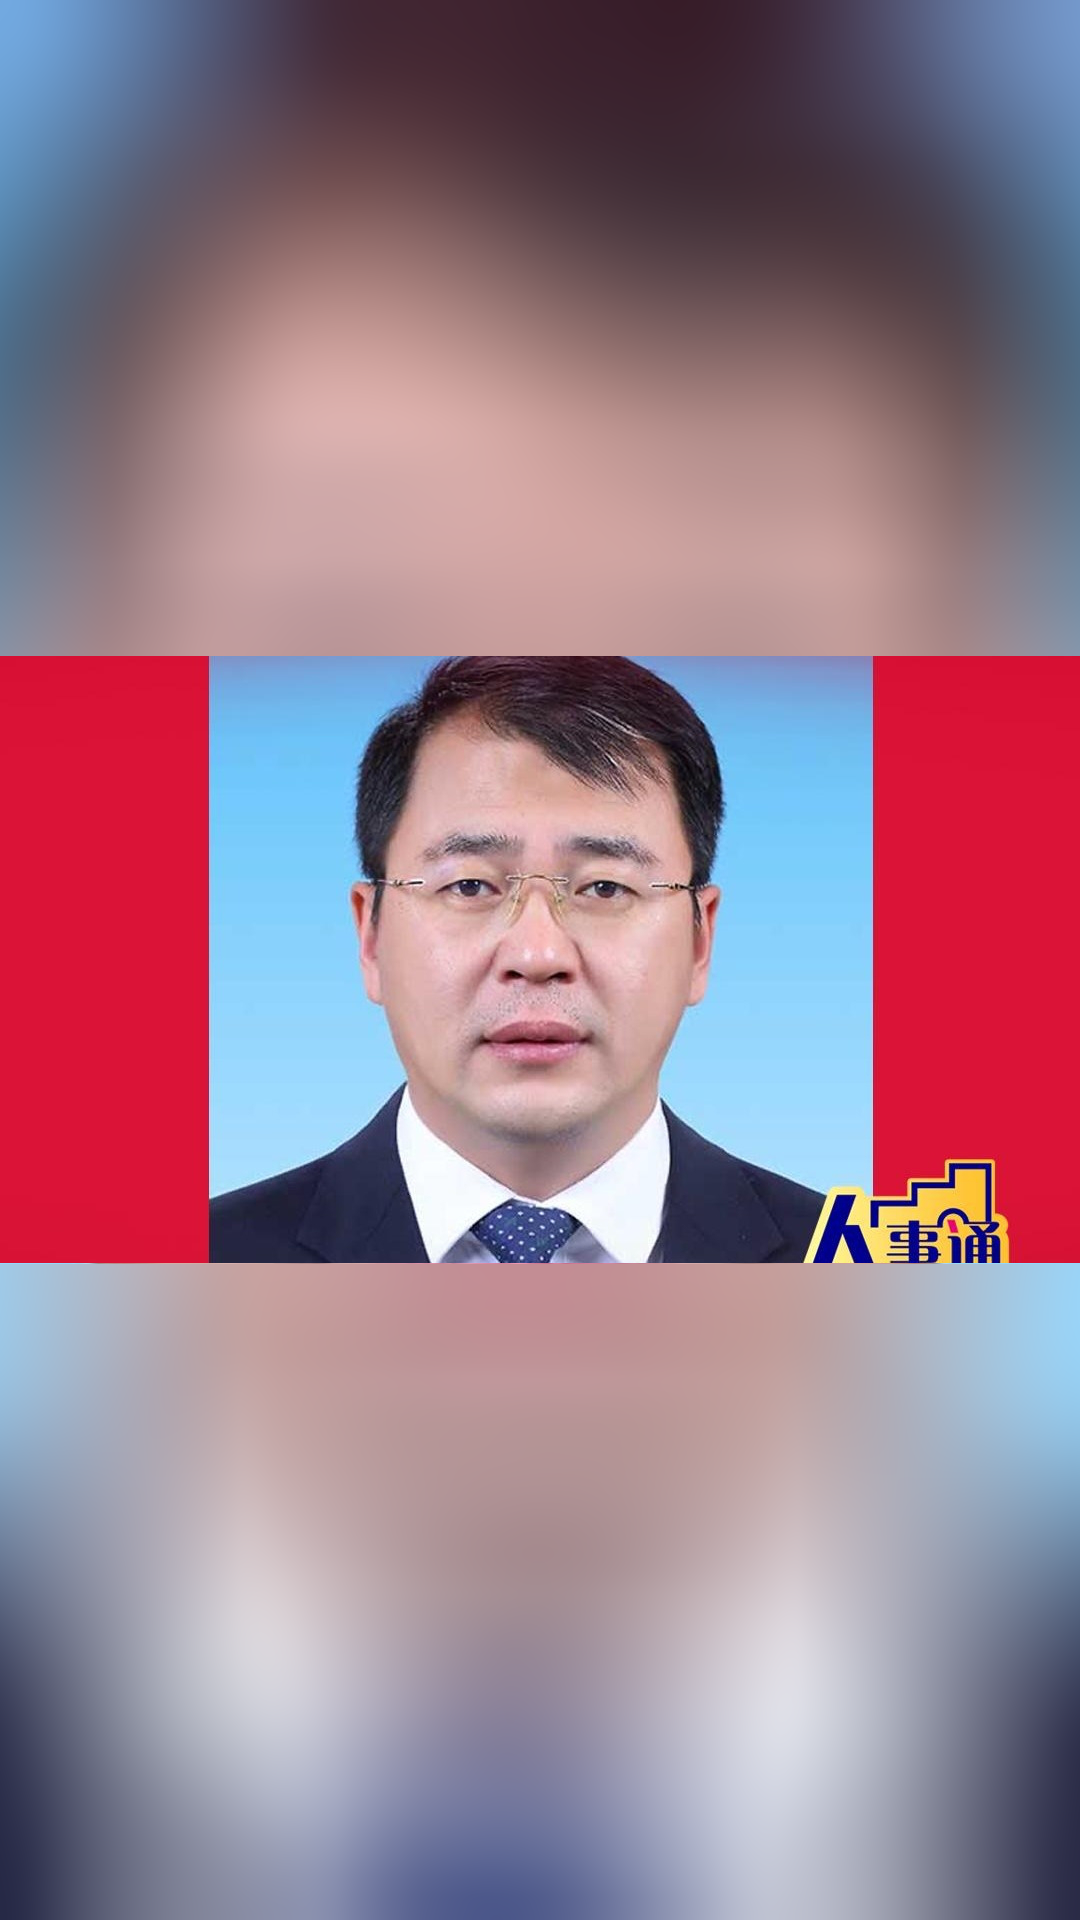 闫相斌任广东外语外贸大学校长,此前为北京科技大学副校长